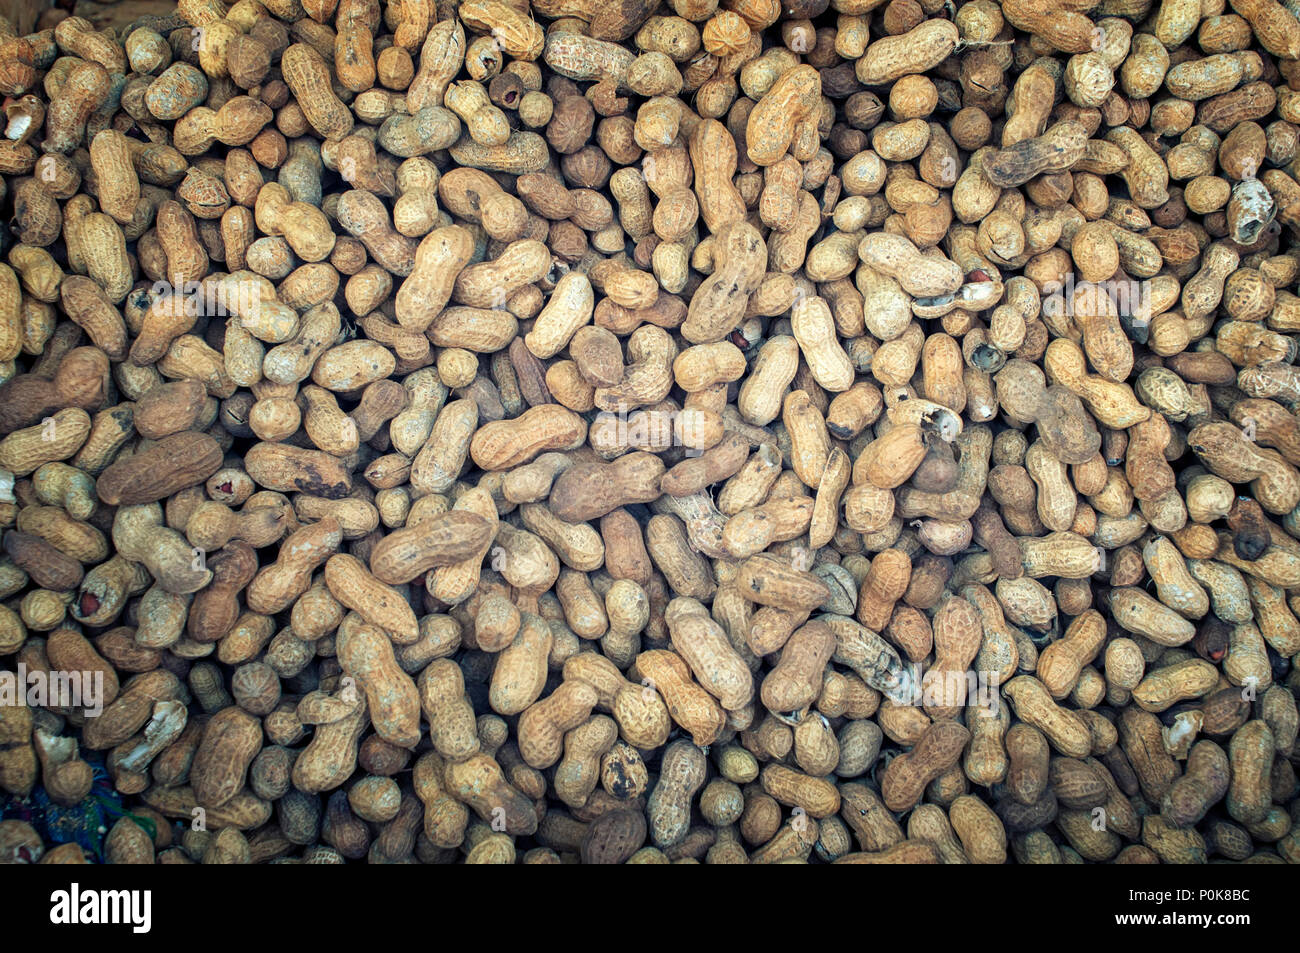 Heap Of Peanut Shells Stock Photo